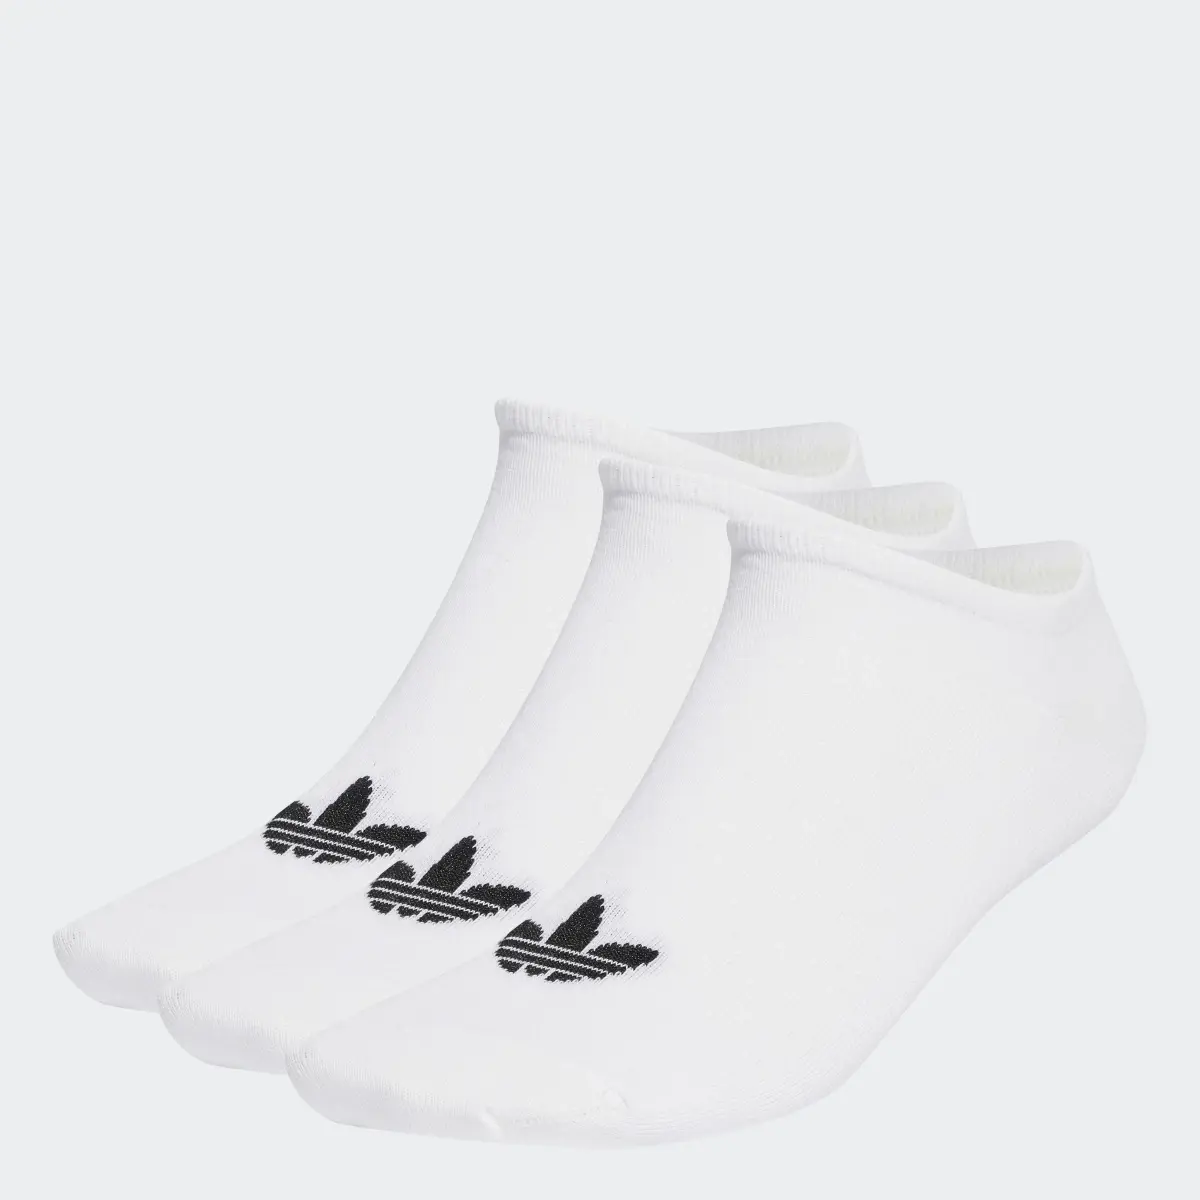 Adidas Calcetines tobilleros Trefoil. 1